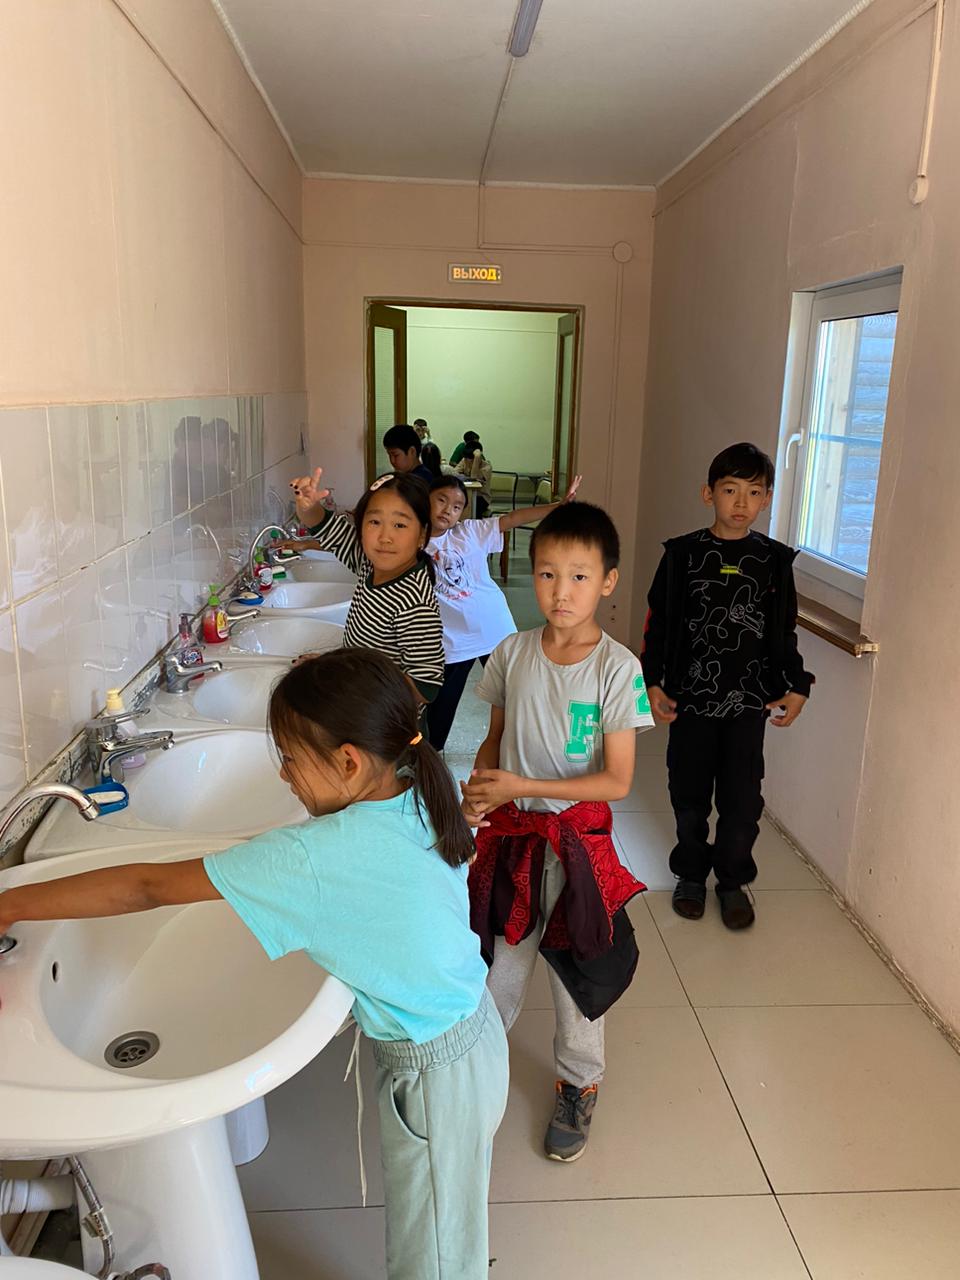 Перед каждым приёмом пищи дети моют руки, и ждут пока дежурные накроют на стол и позовут отряд.